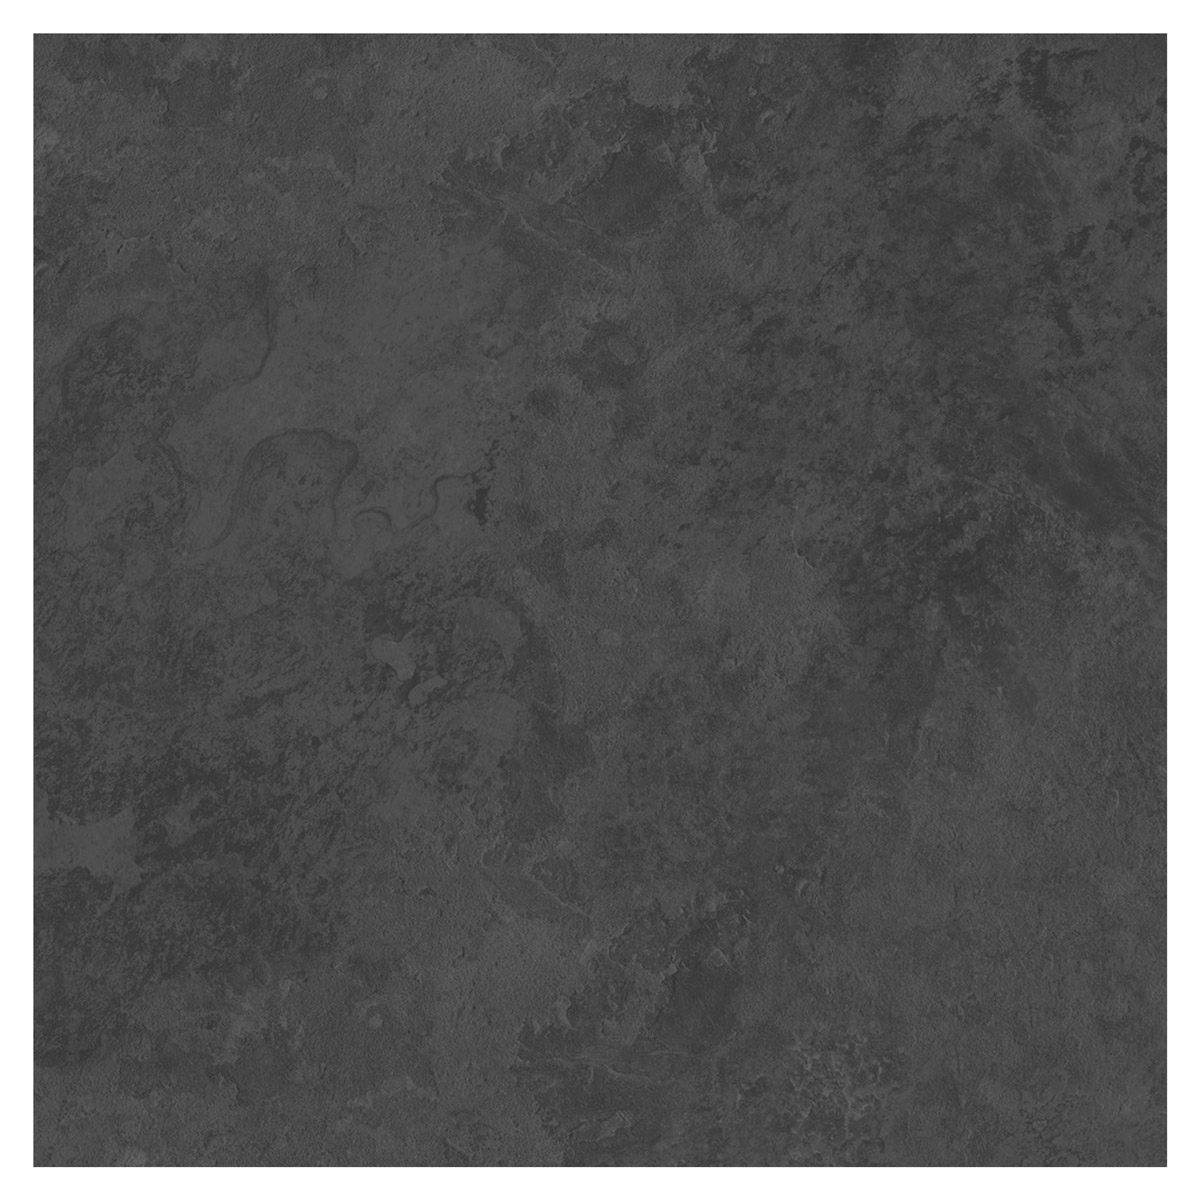 British Ceramic Tile Slate Dark Riven, Dark Grey Ceramic Tile